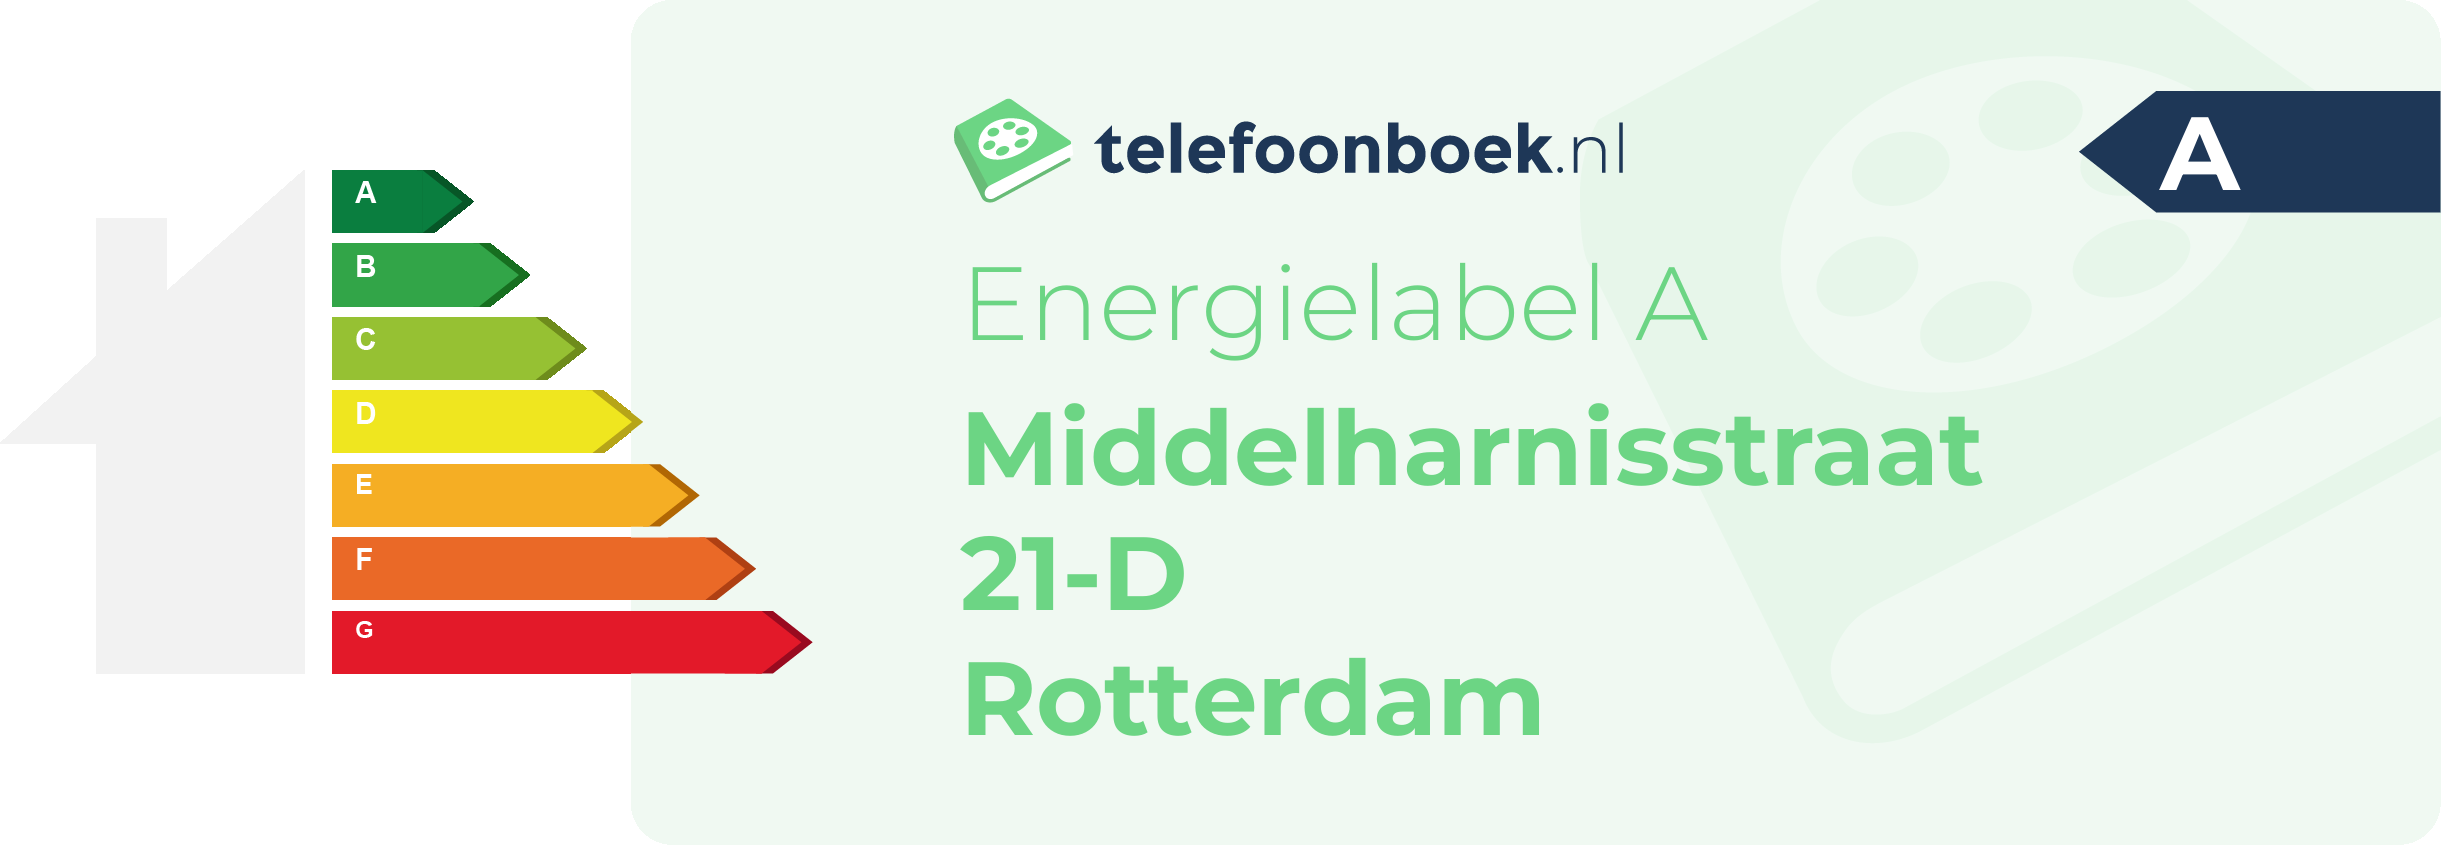 Energielabel Middelharnisstraat 21-D Rotterdam